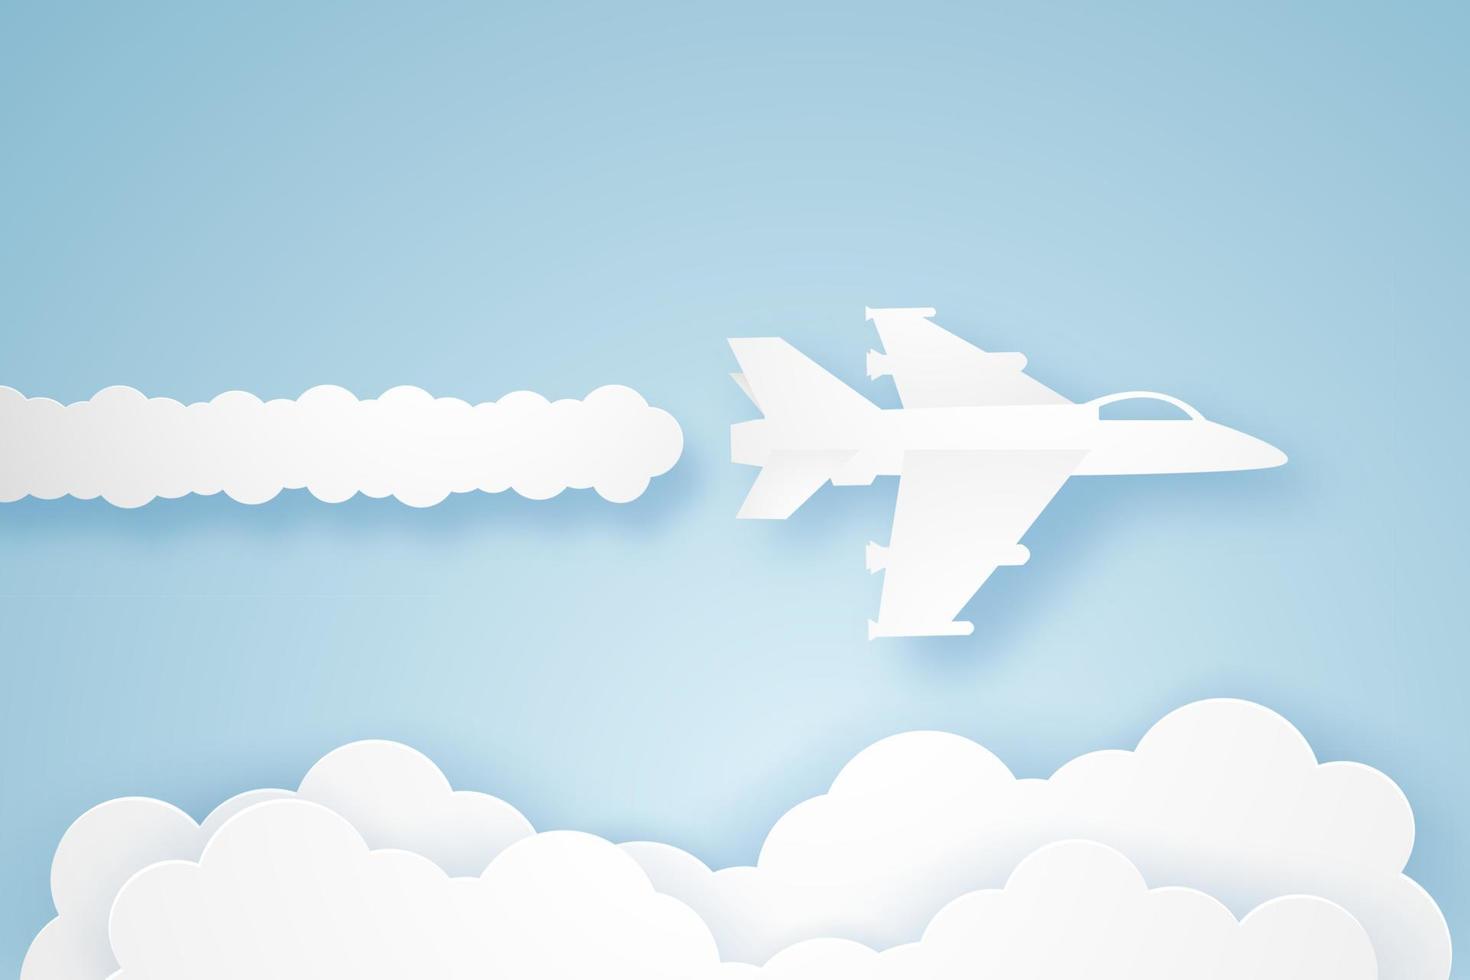 aviones de combate volando en el cielo, estilo de arte de papel vector